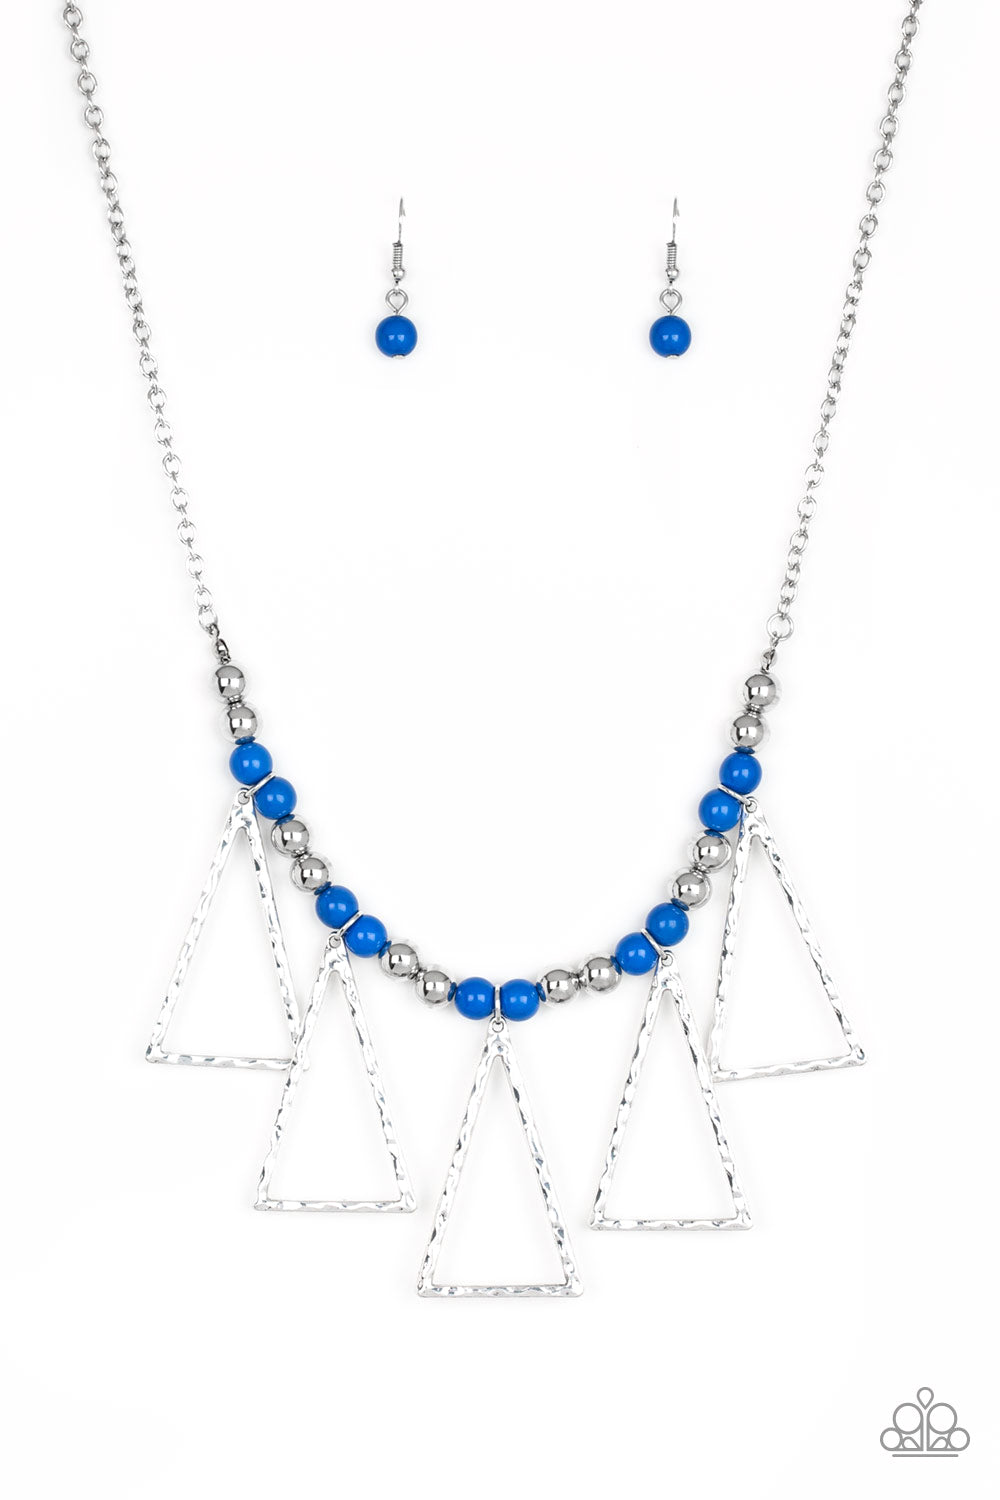 Terra Nouveau - Blue Necklace- Paparazzi Accessories - Paparazzi Accessories 